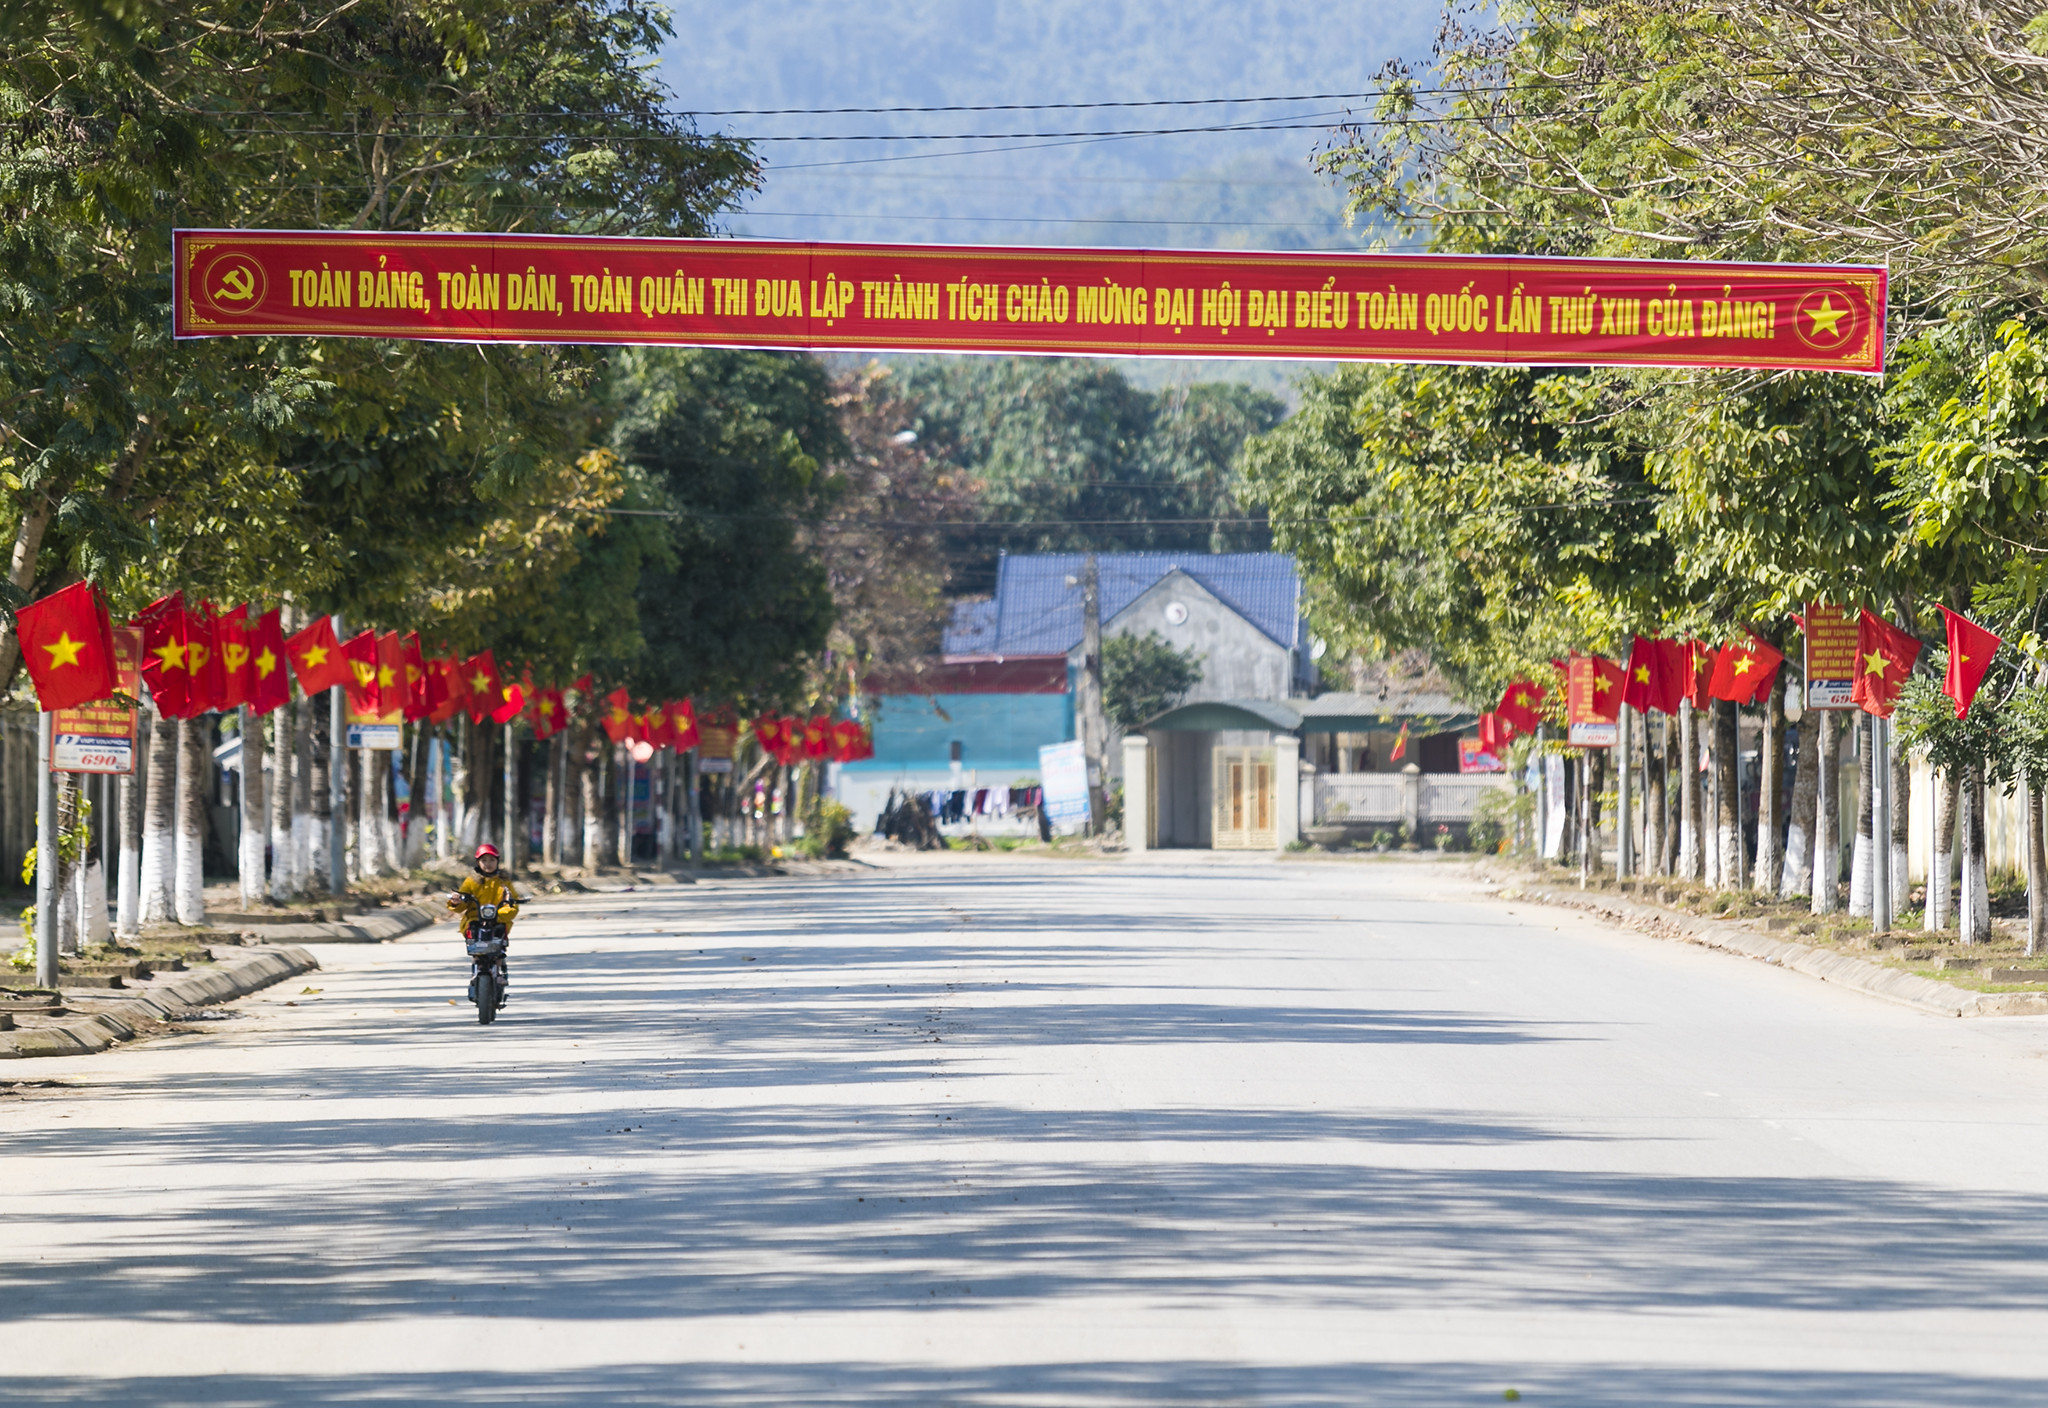 Thị trấn Kim Sơn, huyện Quế Phong rực màu cờ đỏ sao vàng. Ảnh: Đức Anh